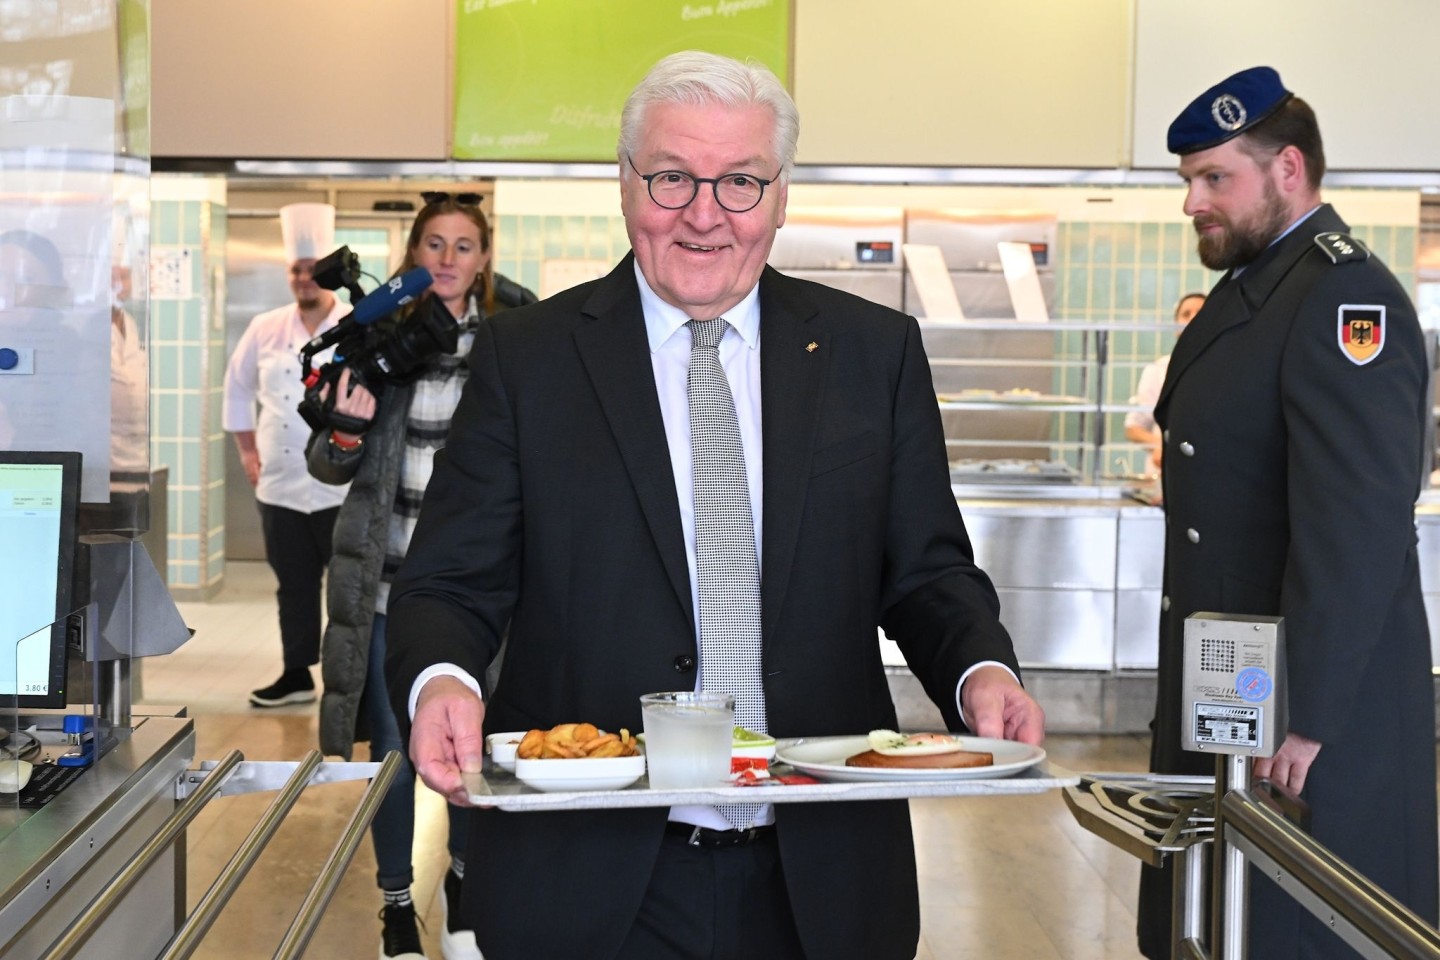 Bundespräsident Frank-Walter Steinmeier bei einem Mittagessen in der Kantine der Bundeswehr - ob er die anwesenden Soldaten mit «Mahlzeit» begrüßte, ist nicht bekannt.